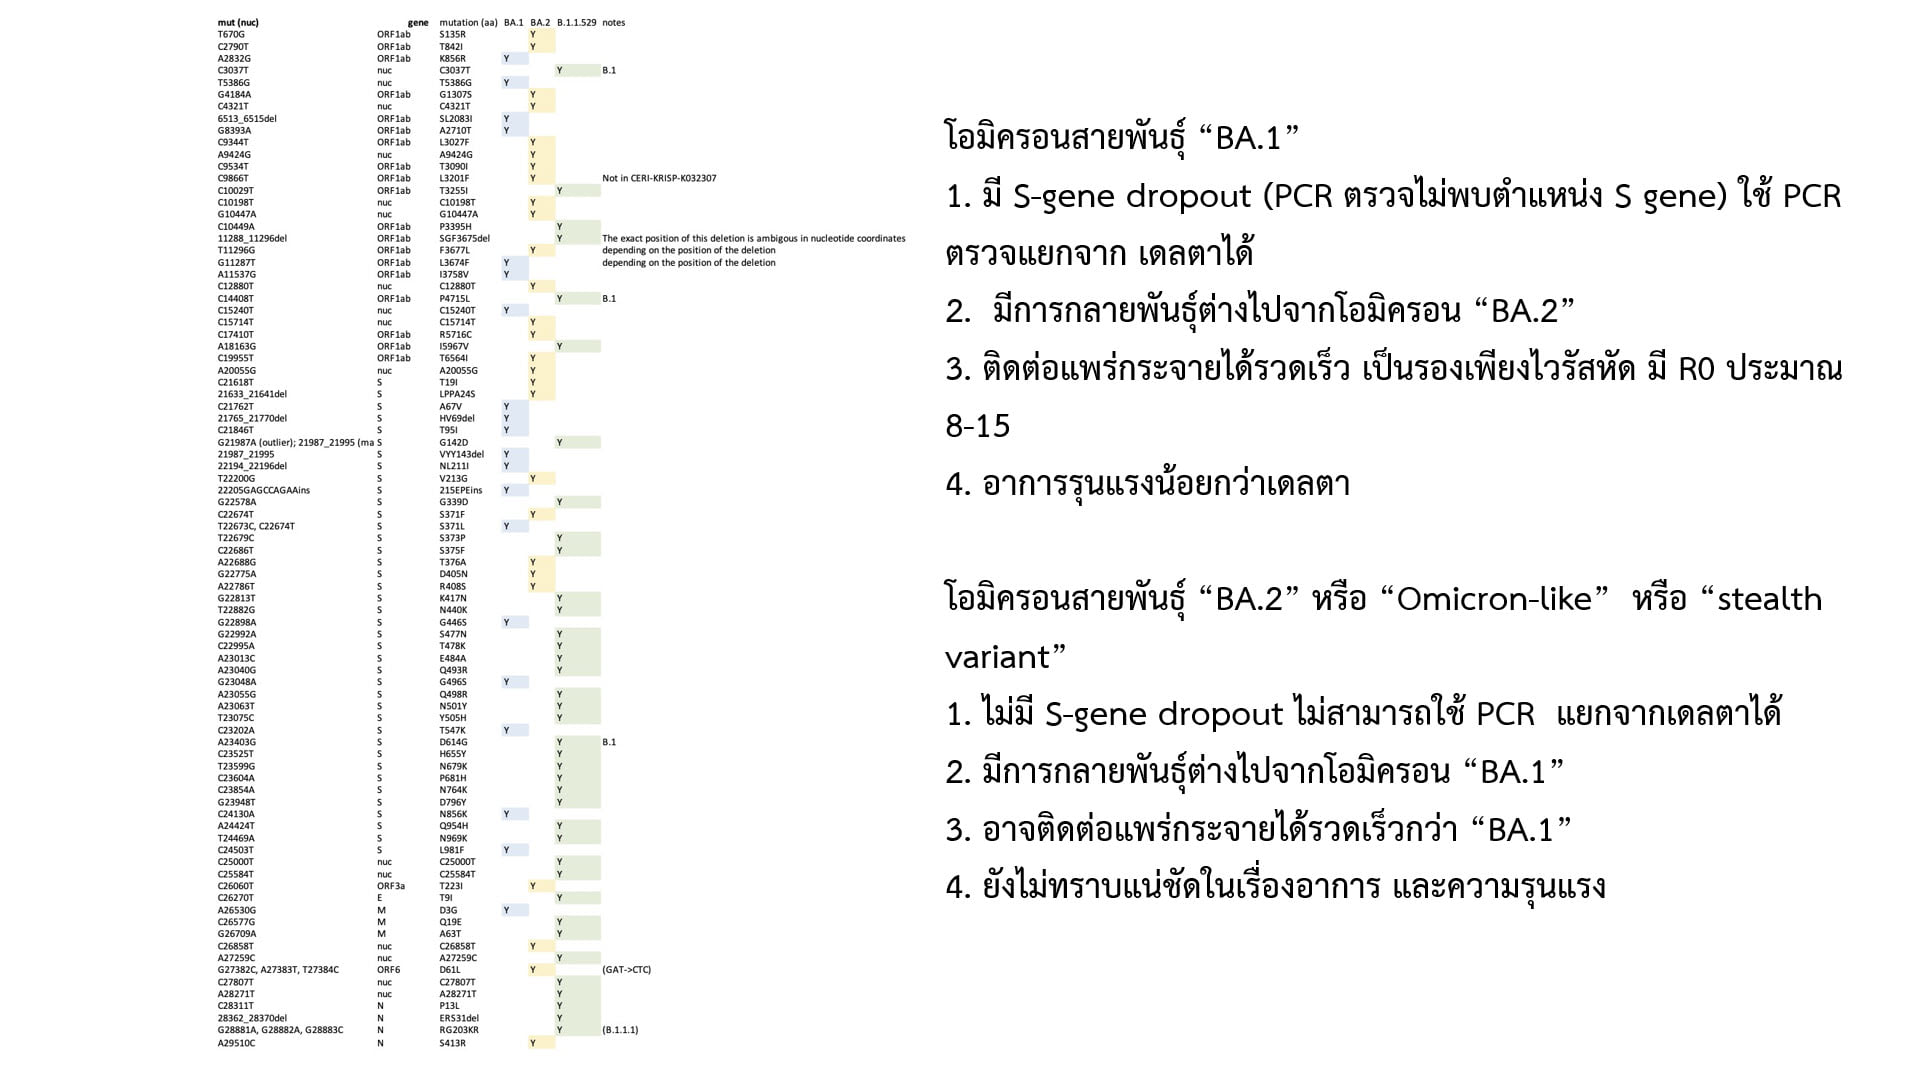 โอไมครอน BA.2 ศูนย์จีโนมฯเผยพบในไทยแค่ 2 รายกลายพันธุ์ 70-80 ตำแหน่ง